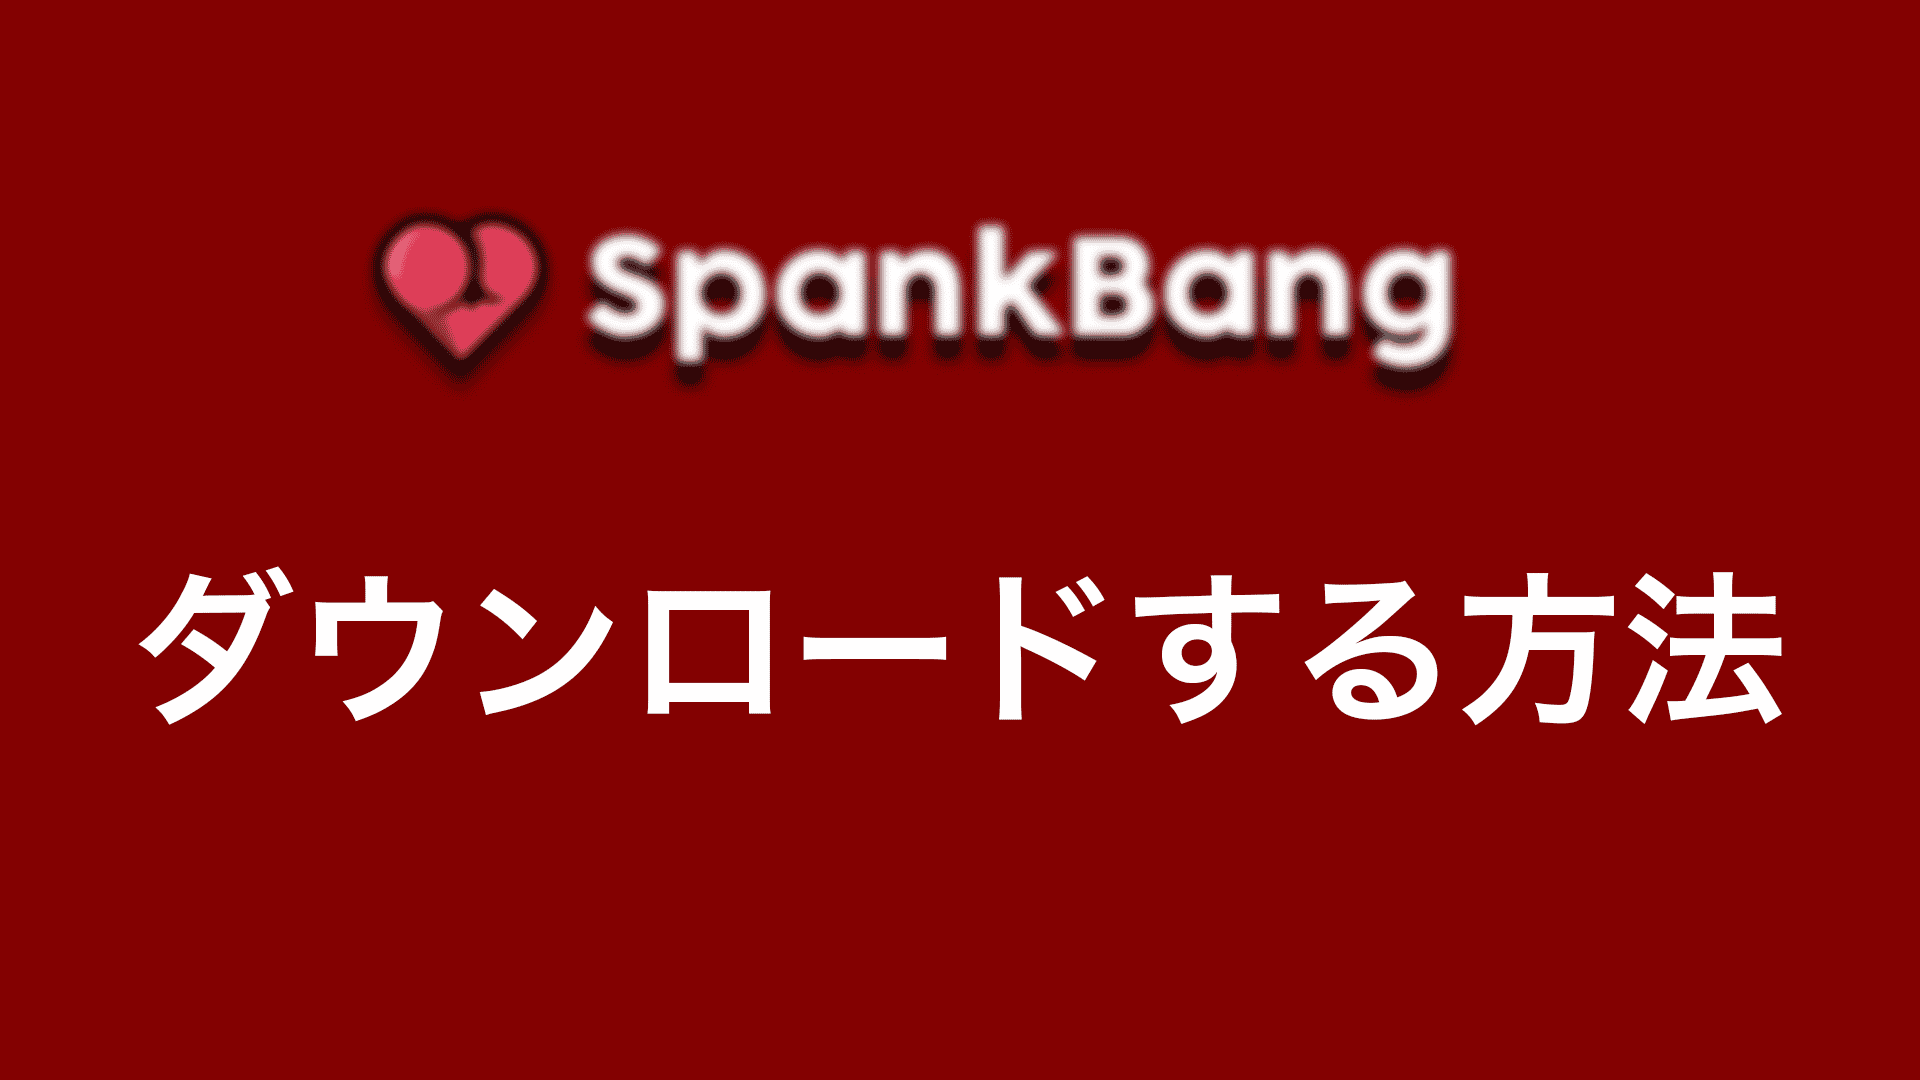 spankhd - 【2022年】SpankbangをPCでダウンロードする方法